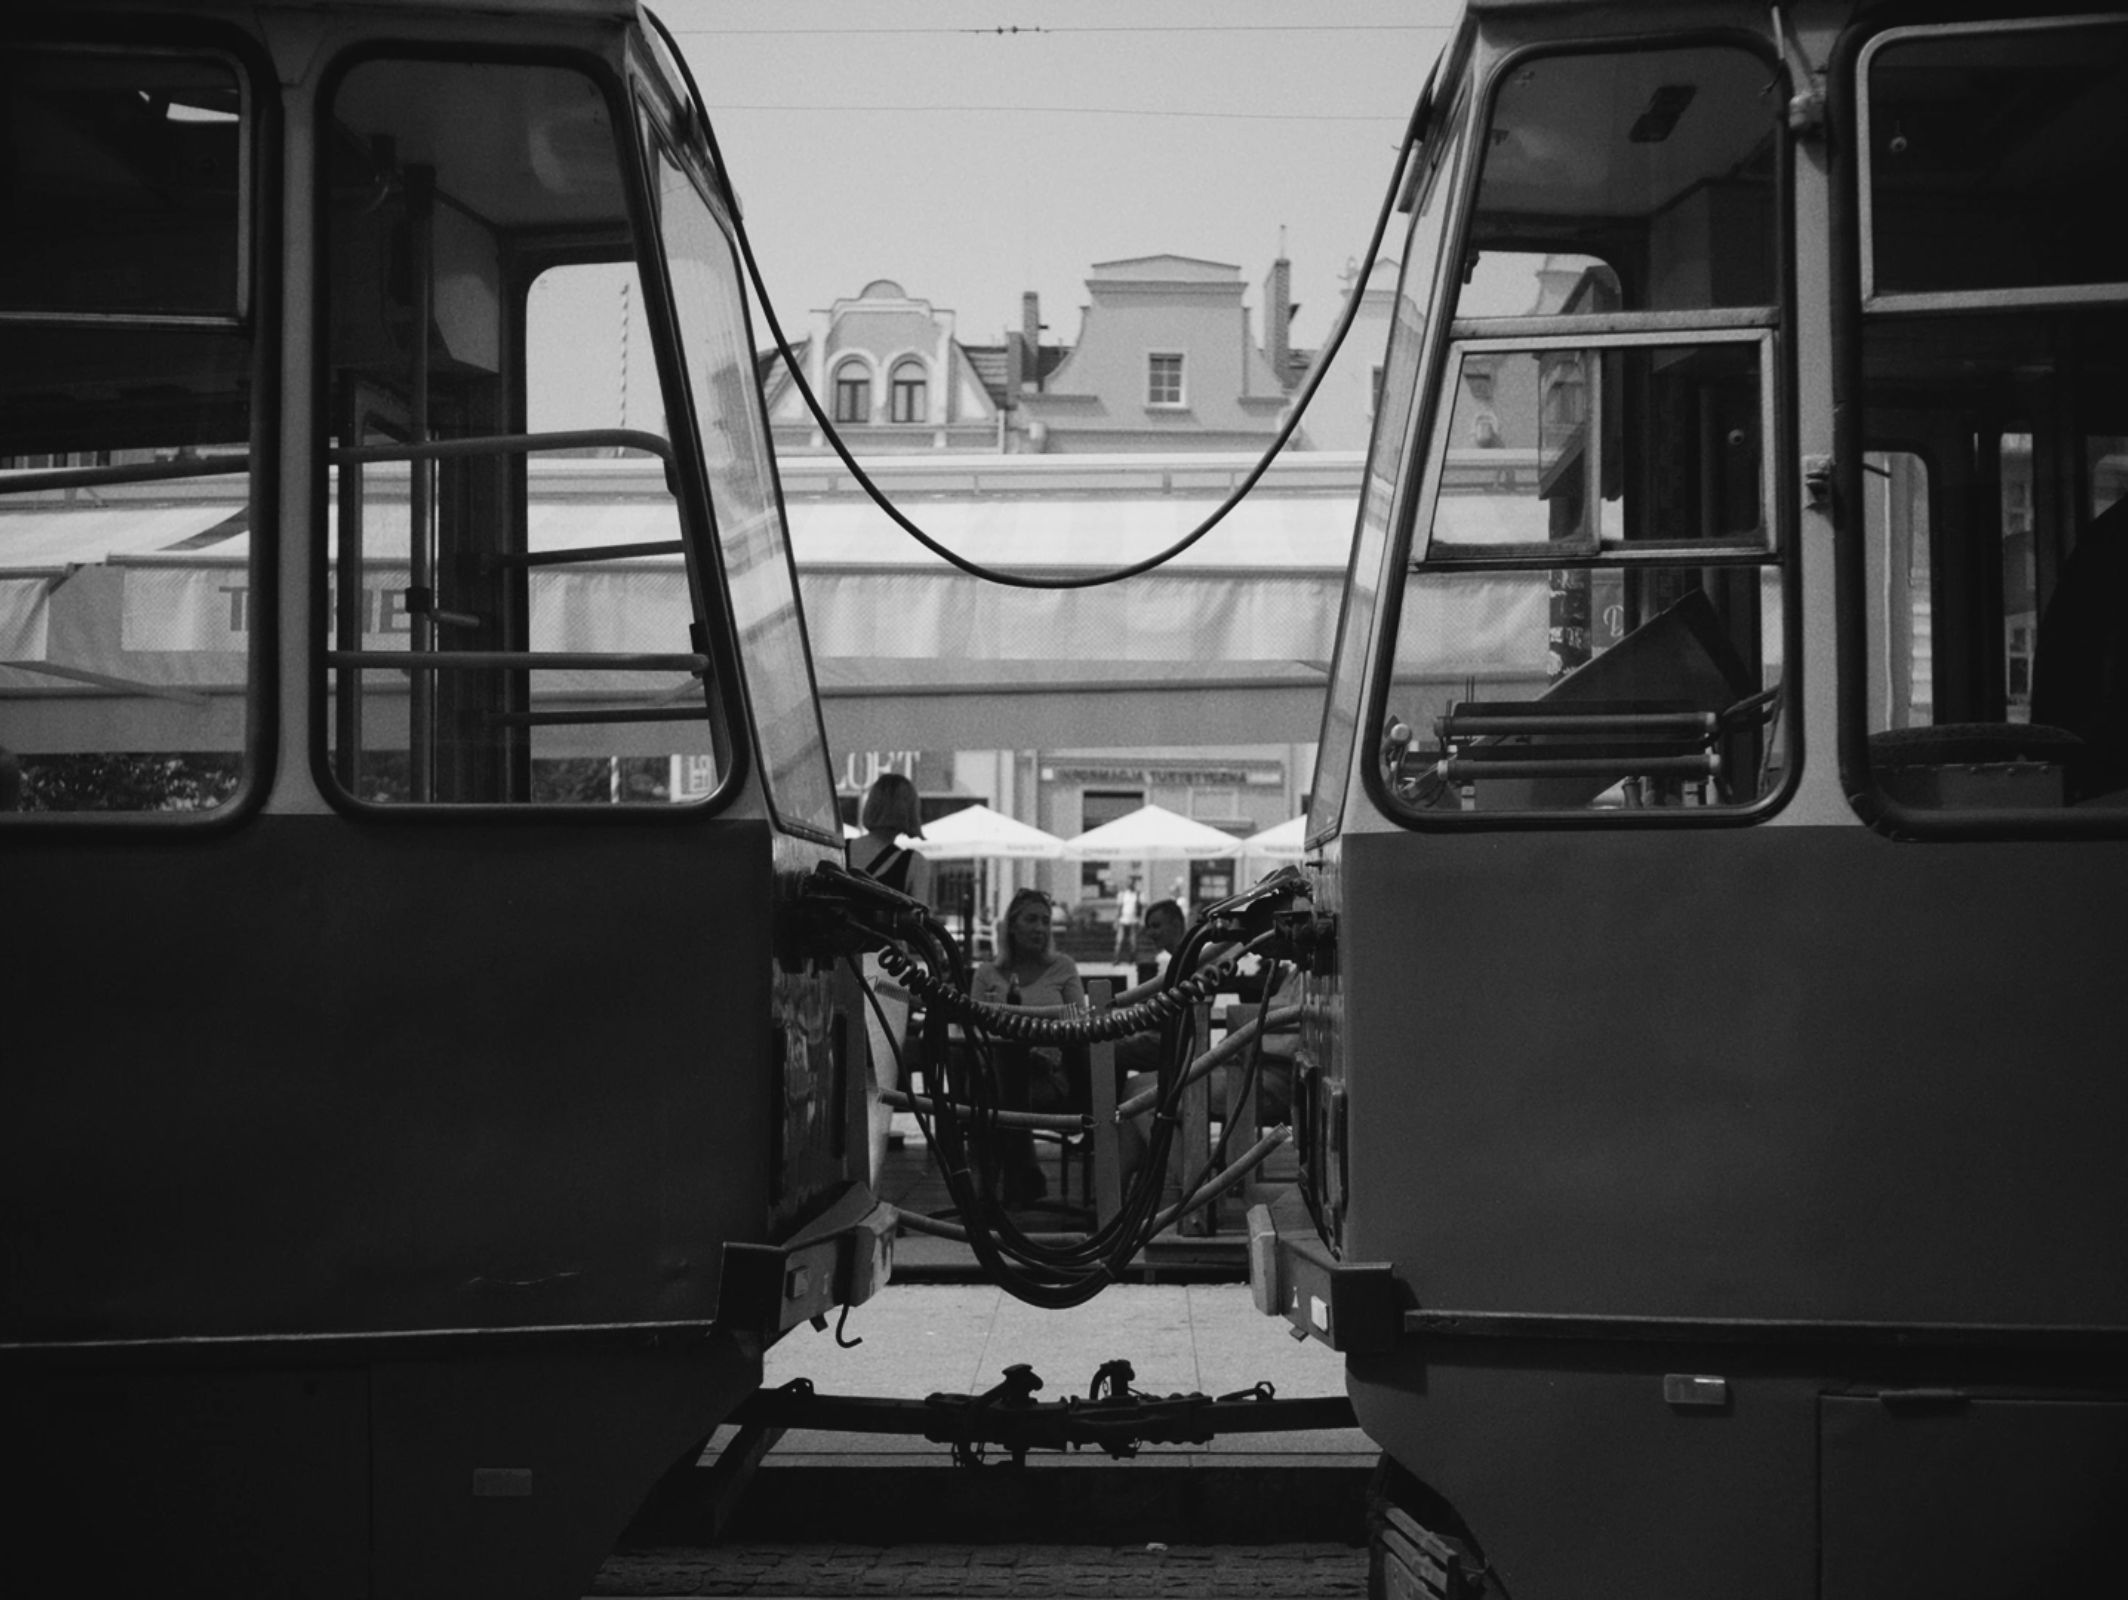  Трамвај (Tramway, 2021)